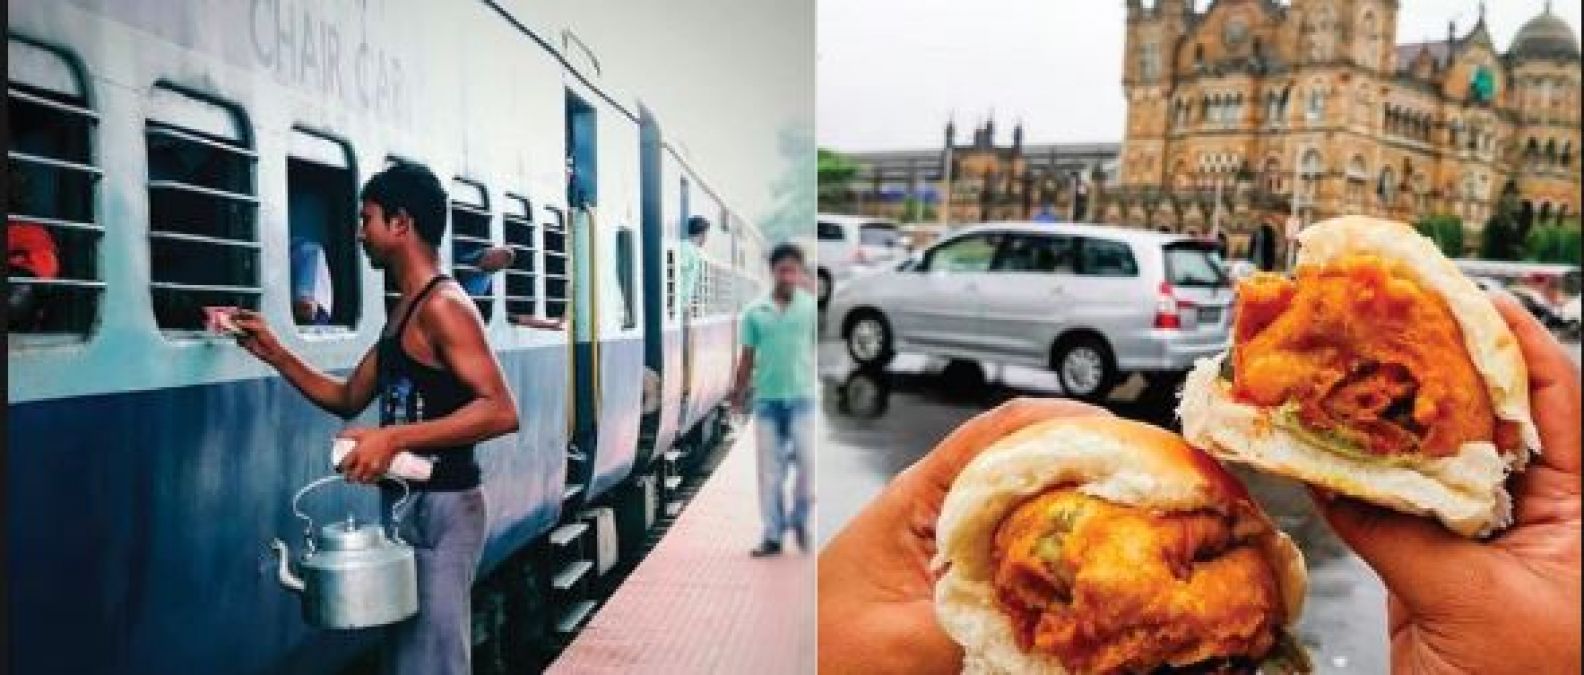 भारत के इन रेलवे स्टेशनों पर मिलता है रेस्टोरेंट से भी ज्यादा स्वादिष्ट भोजन